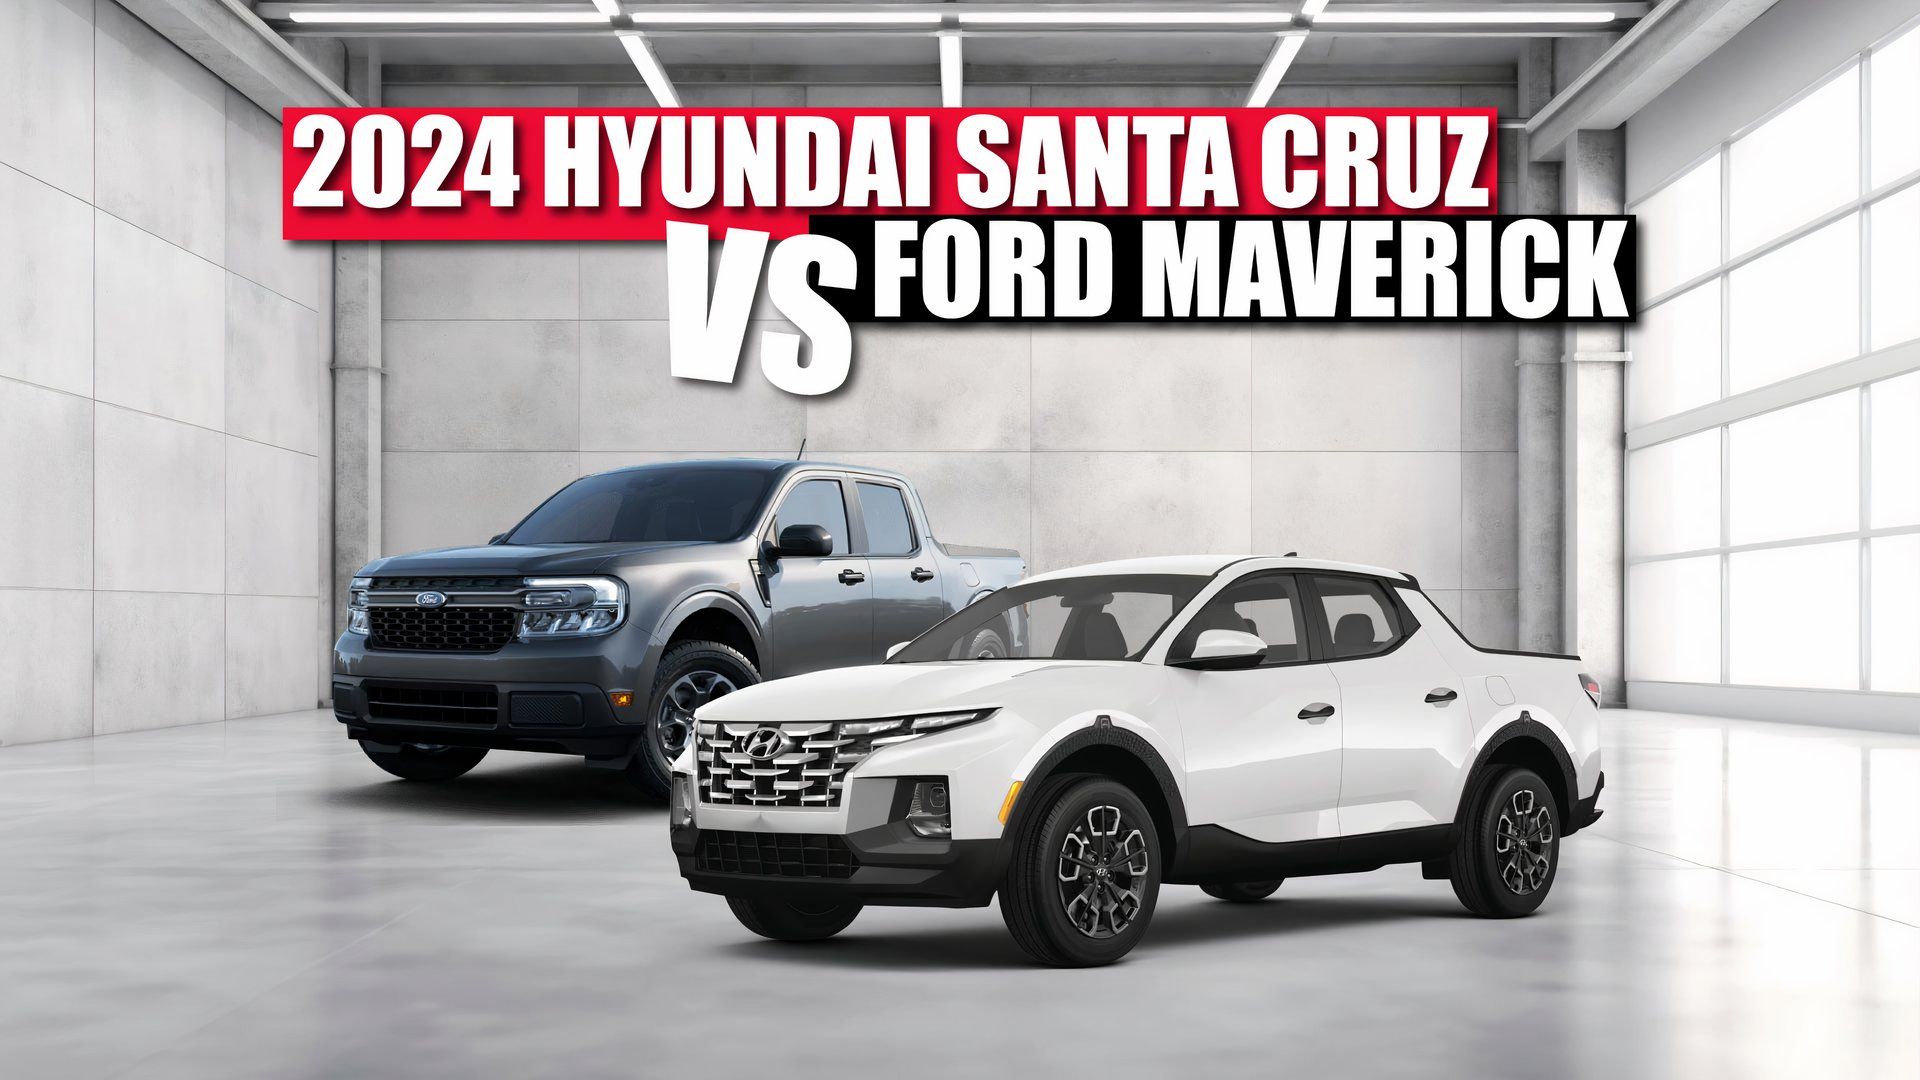 Hyundai Santa Cruz VS Ford Maverick